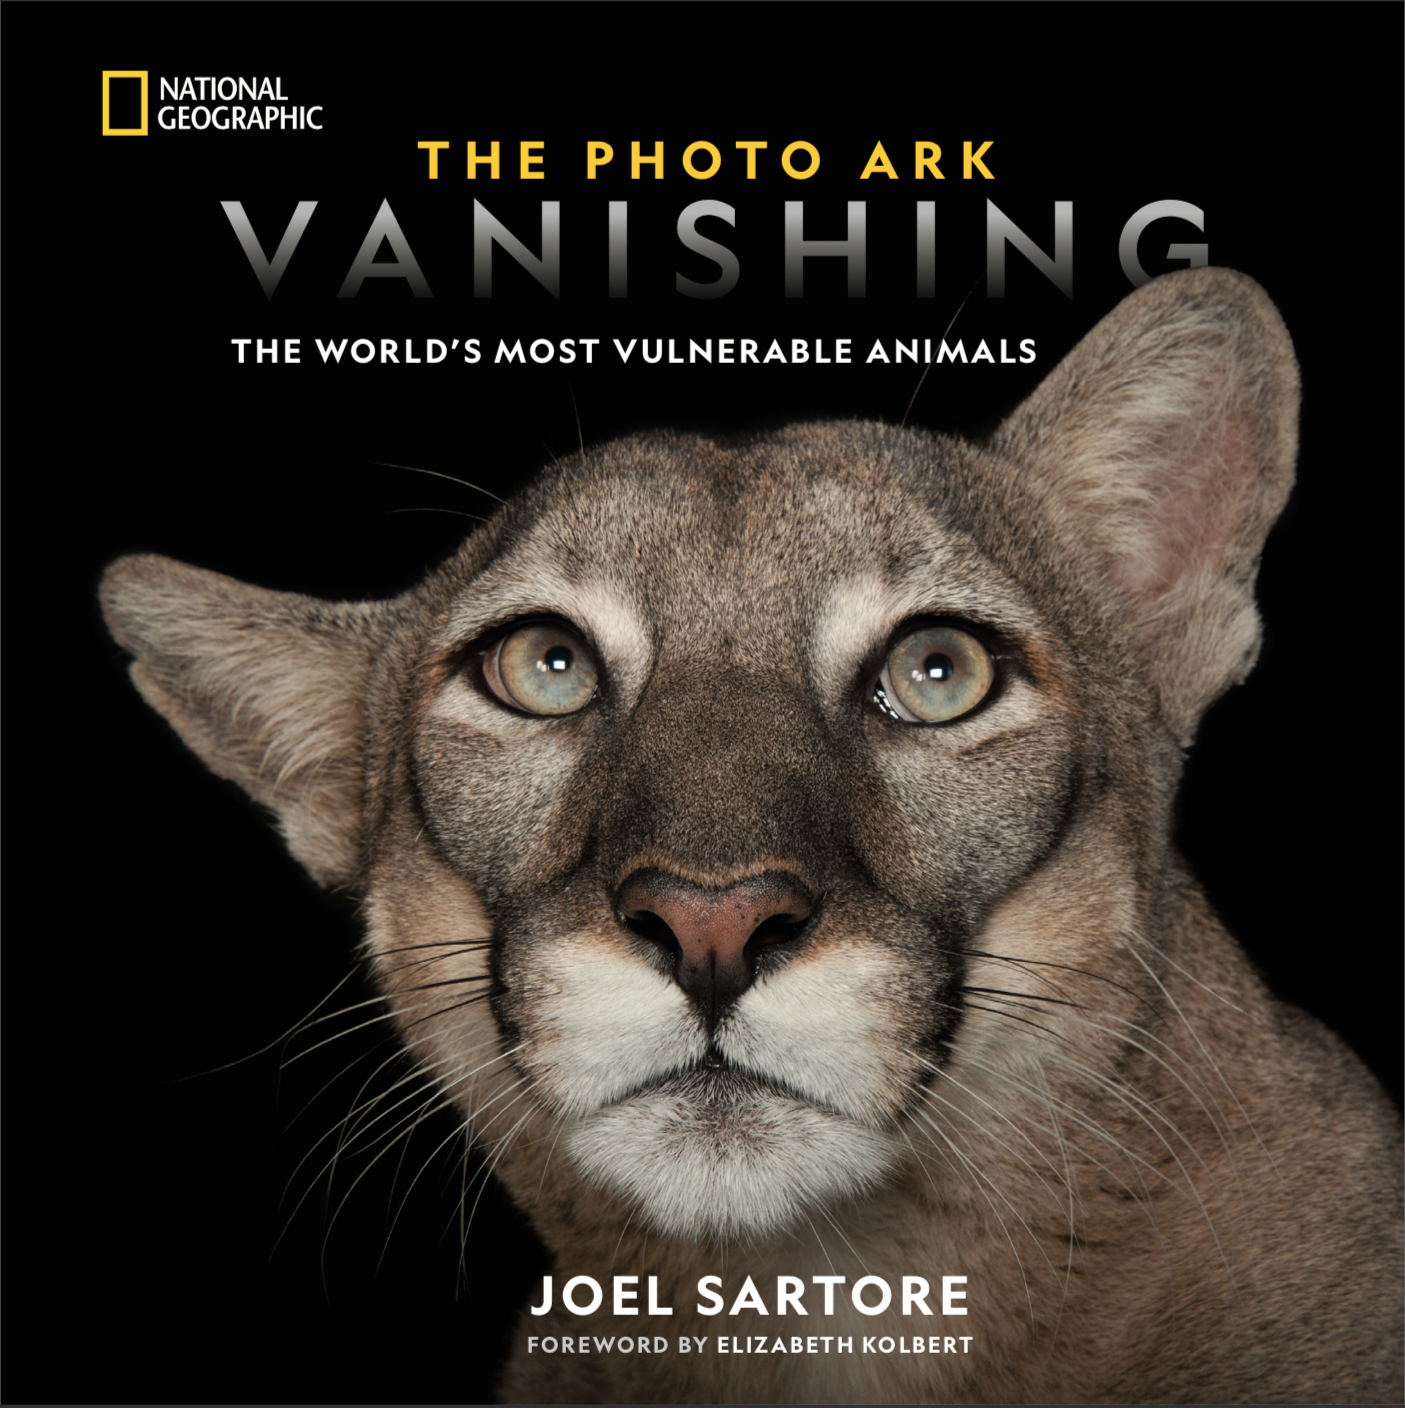 The Photo Ark: Vanishing, National Geographic, 2019